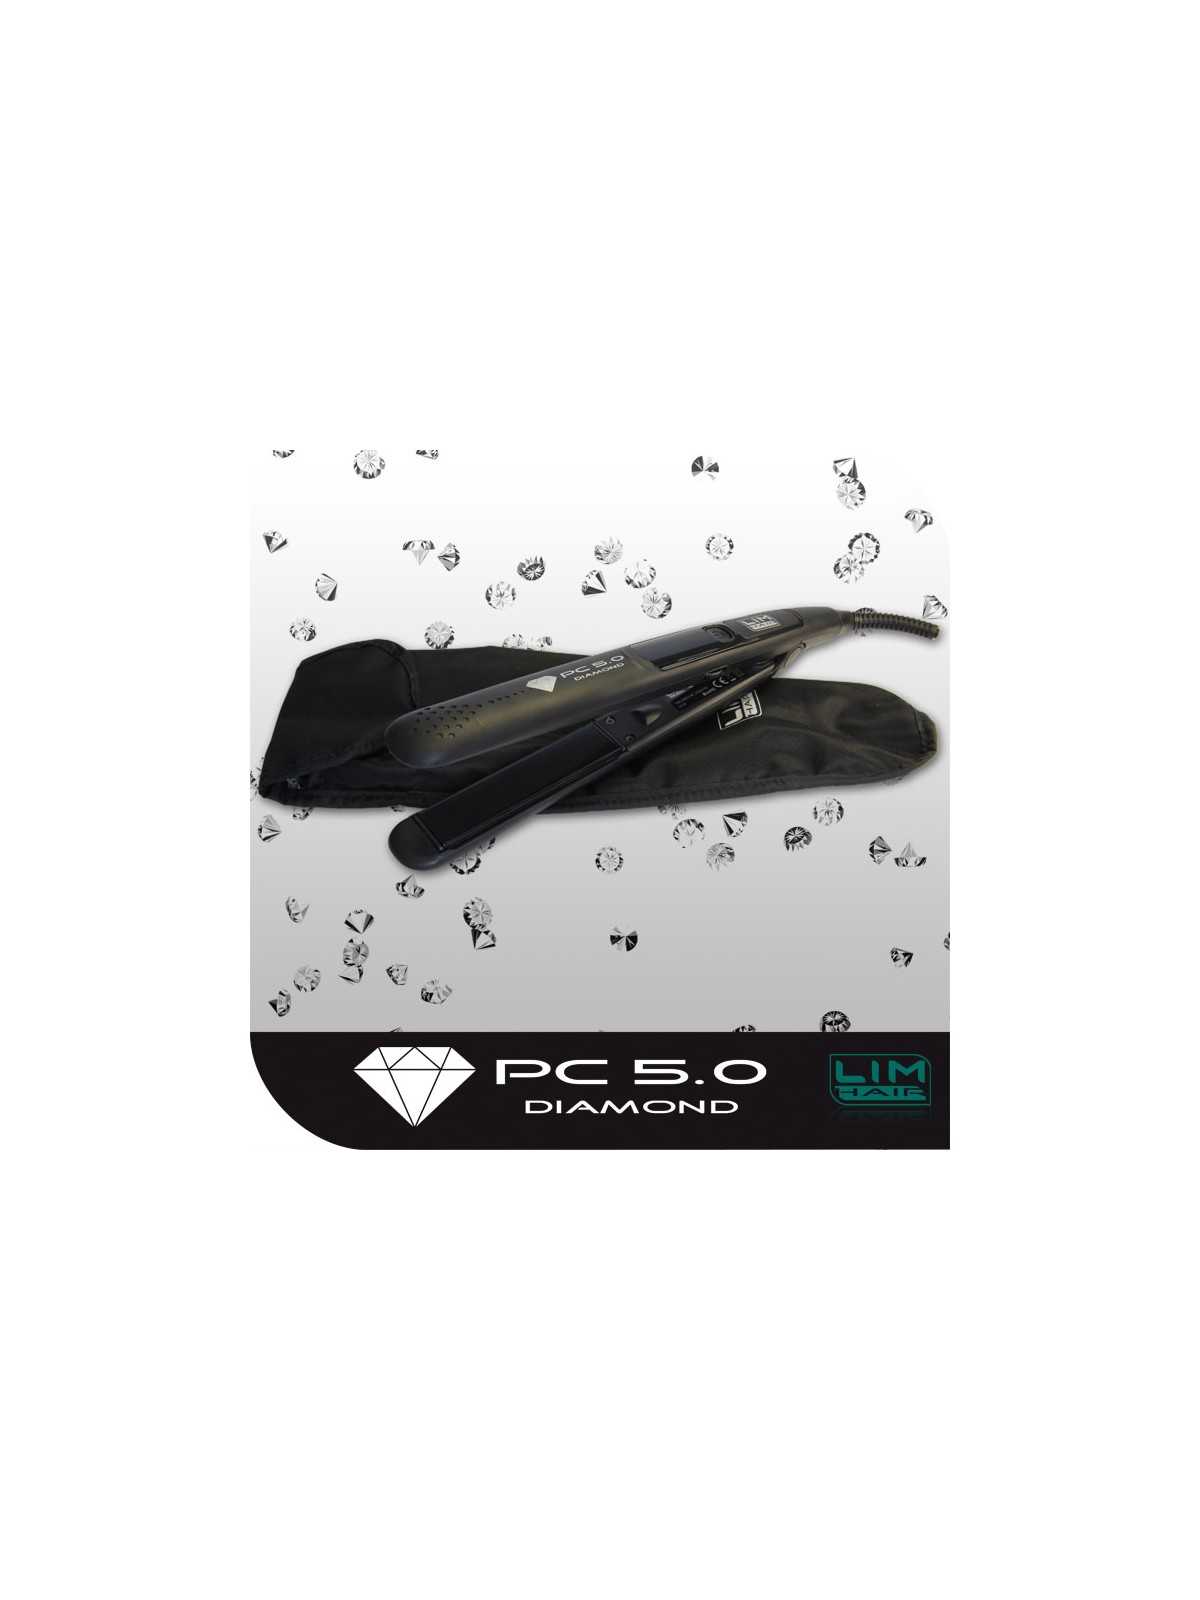 Regala Plancha profesional pc 5.0 Diamond Negro .- Lim Hair con nuestra selección de Tenacillas y Planchas por tan sólo 58,34 € o precio específico 49,59 € en Thalie Care